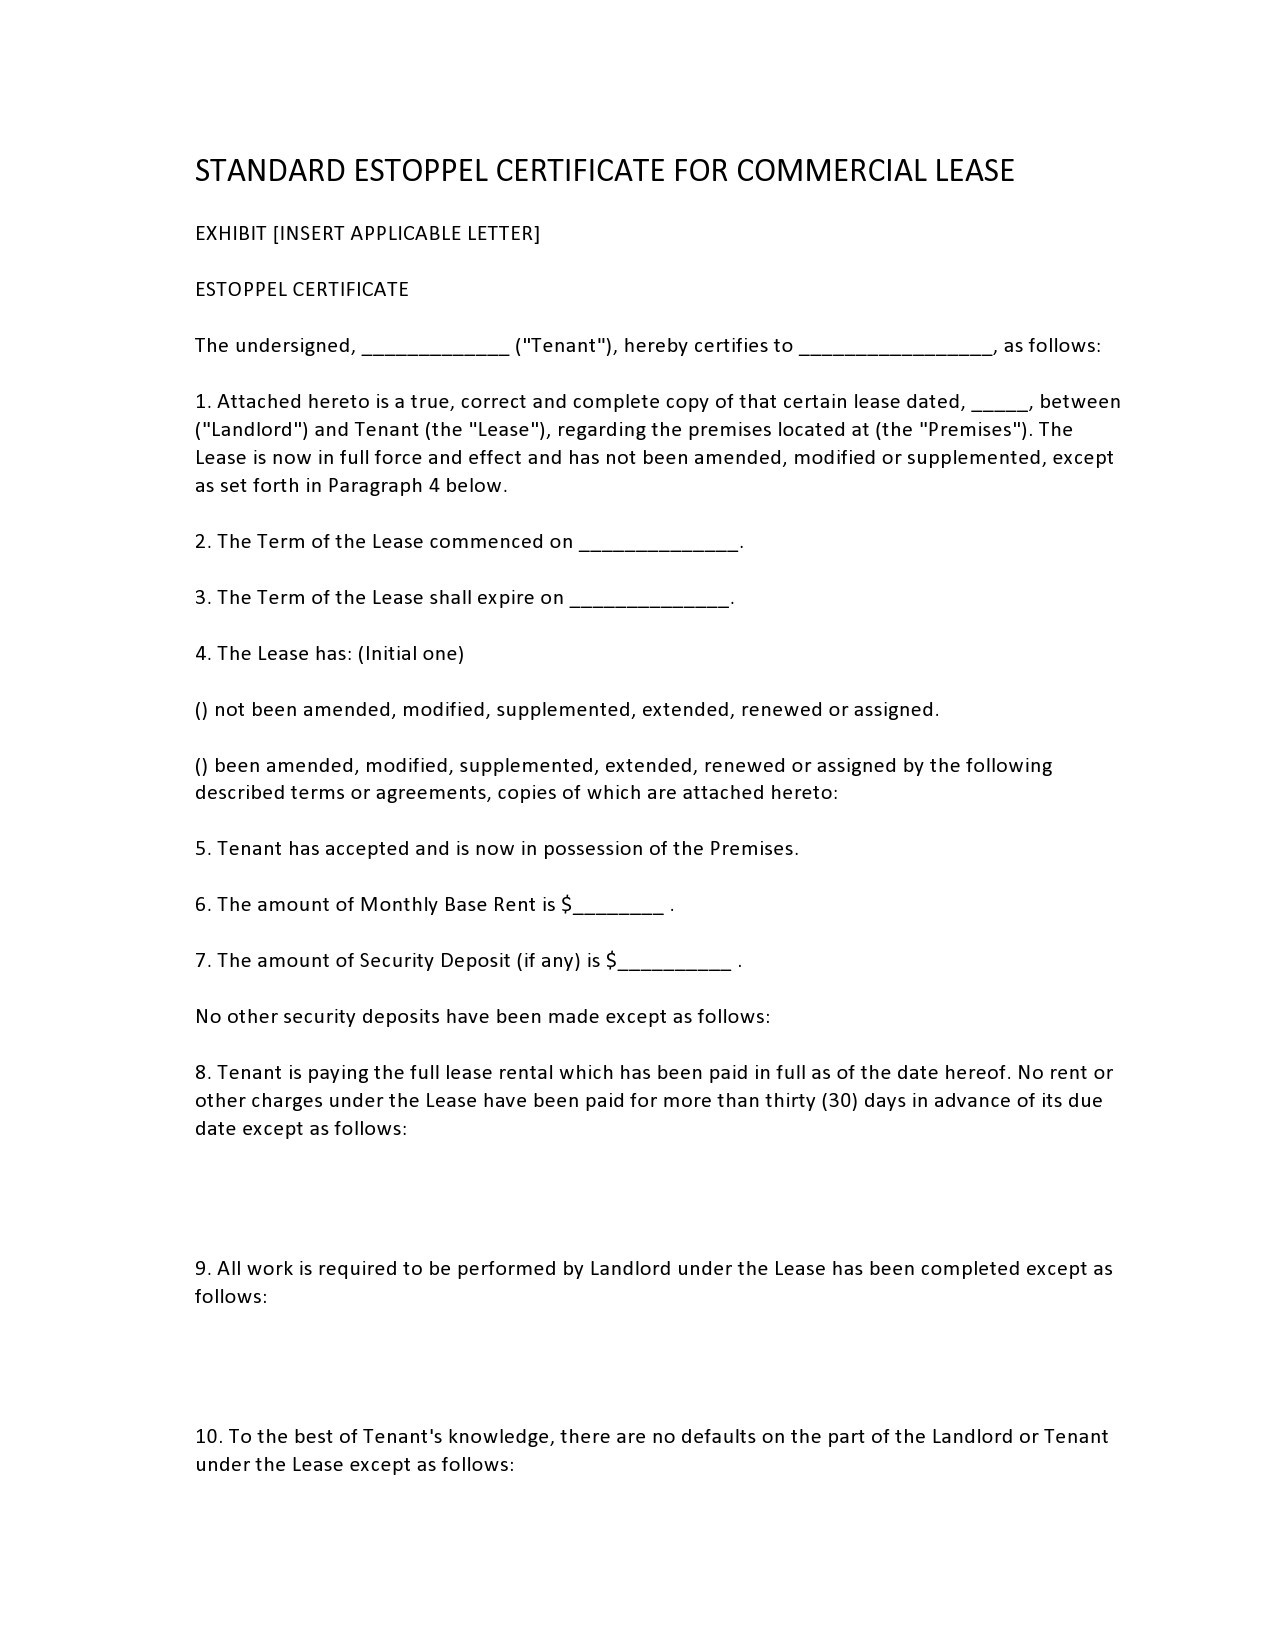 Free estoppel certificate form 05